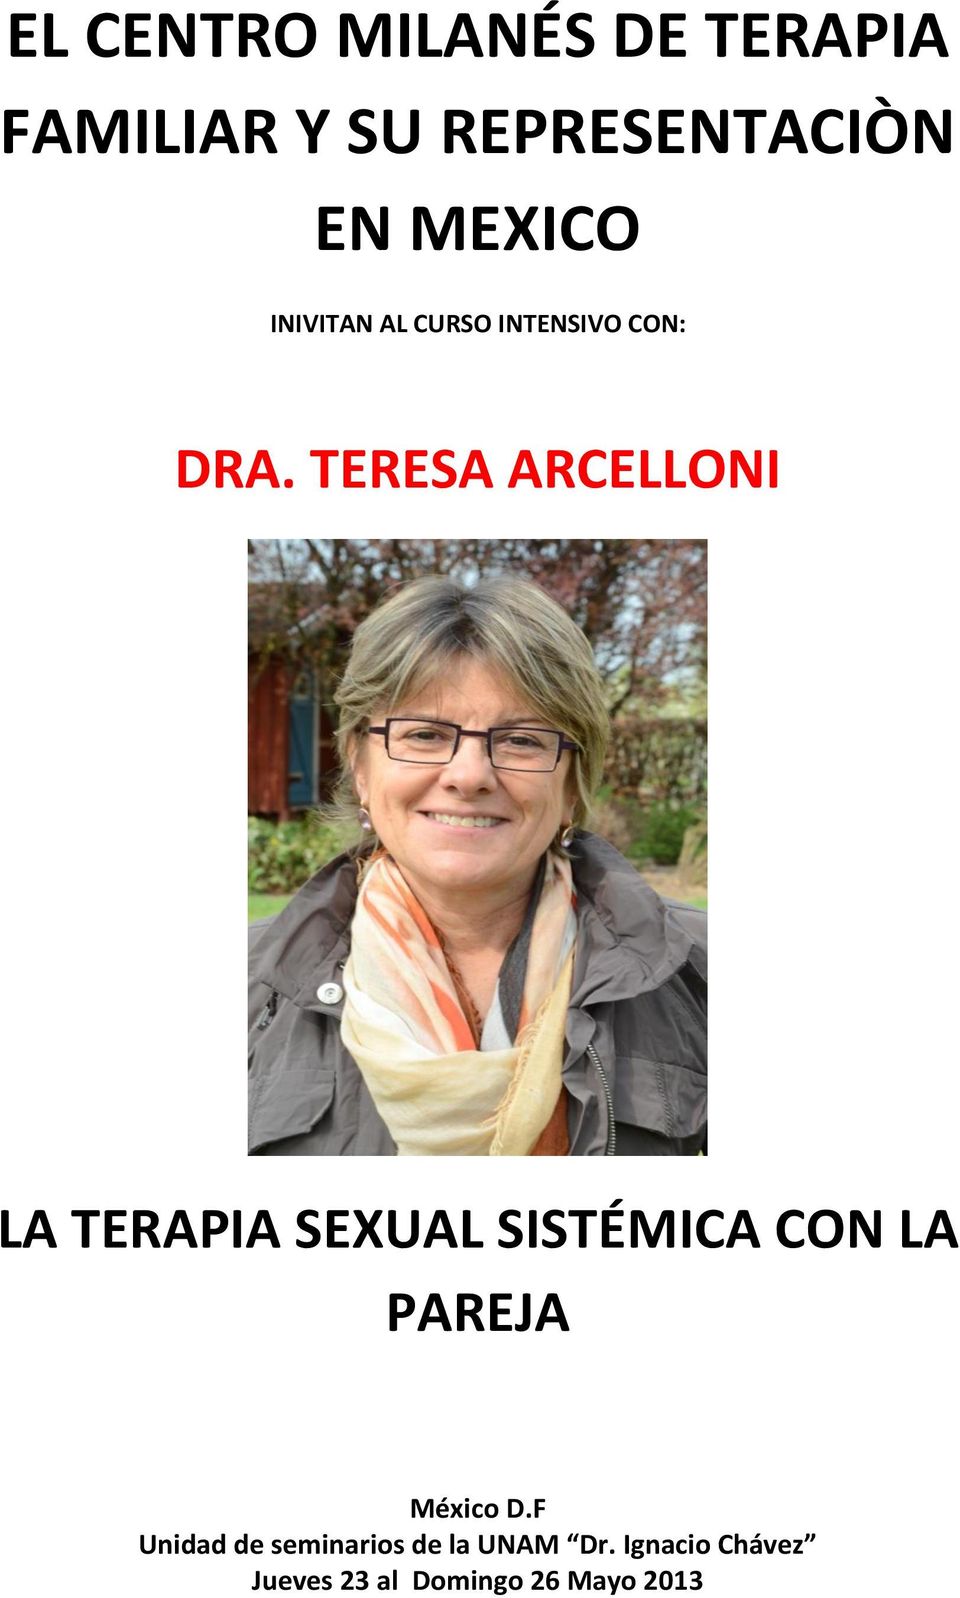 TERESA ARCELLONI LA TERAPIA SEXUAL SISTÉMICA CON LA PAREJA